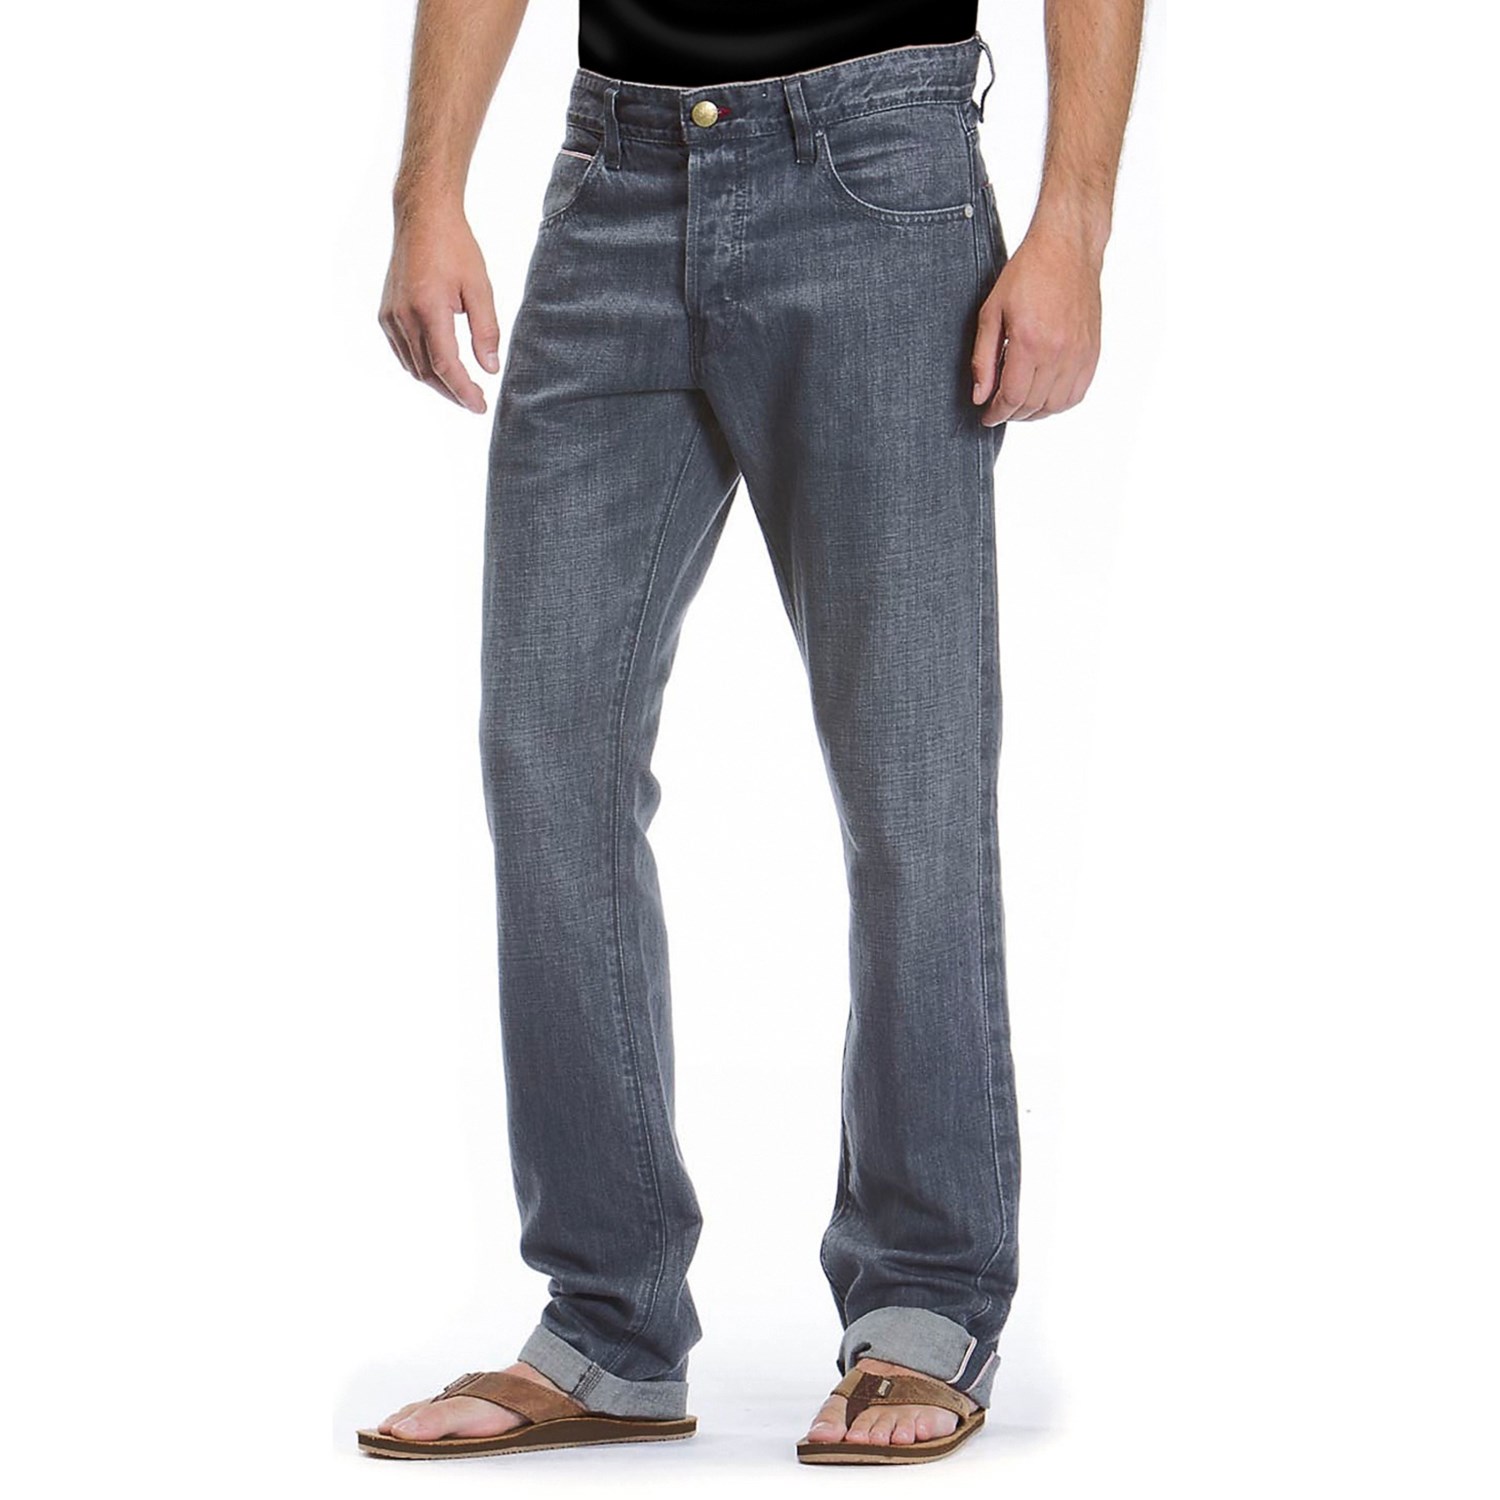 Agave Denim Purist Old Loom Linen Jeans (For Men) 6715V